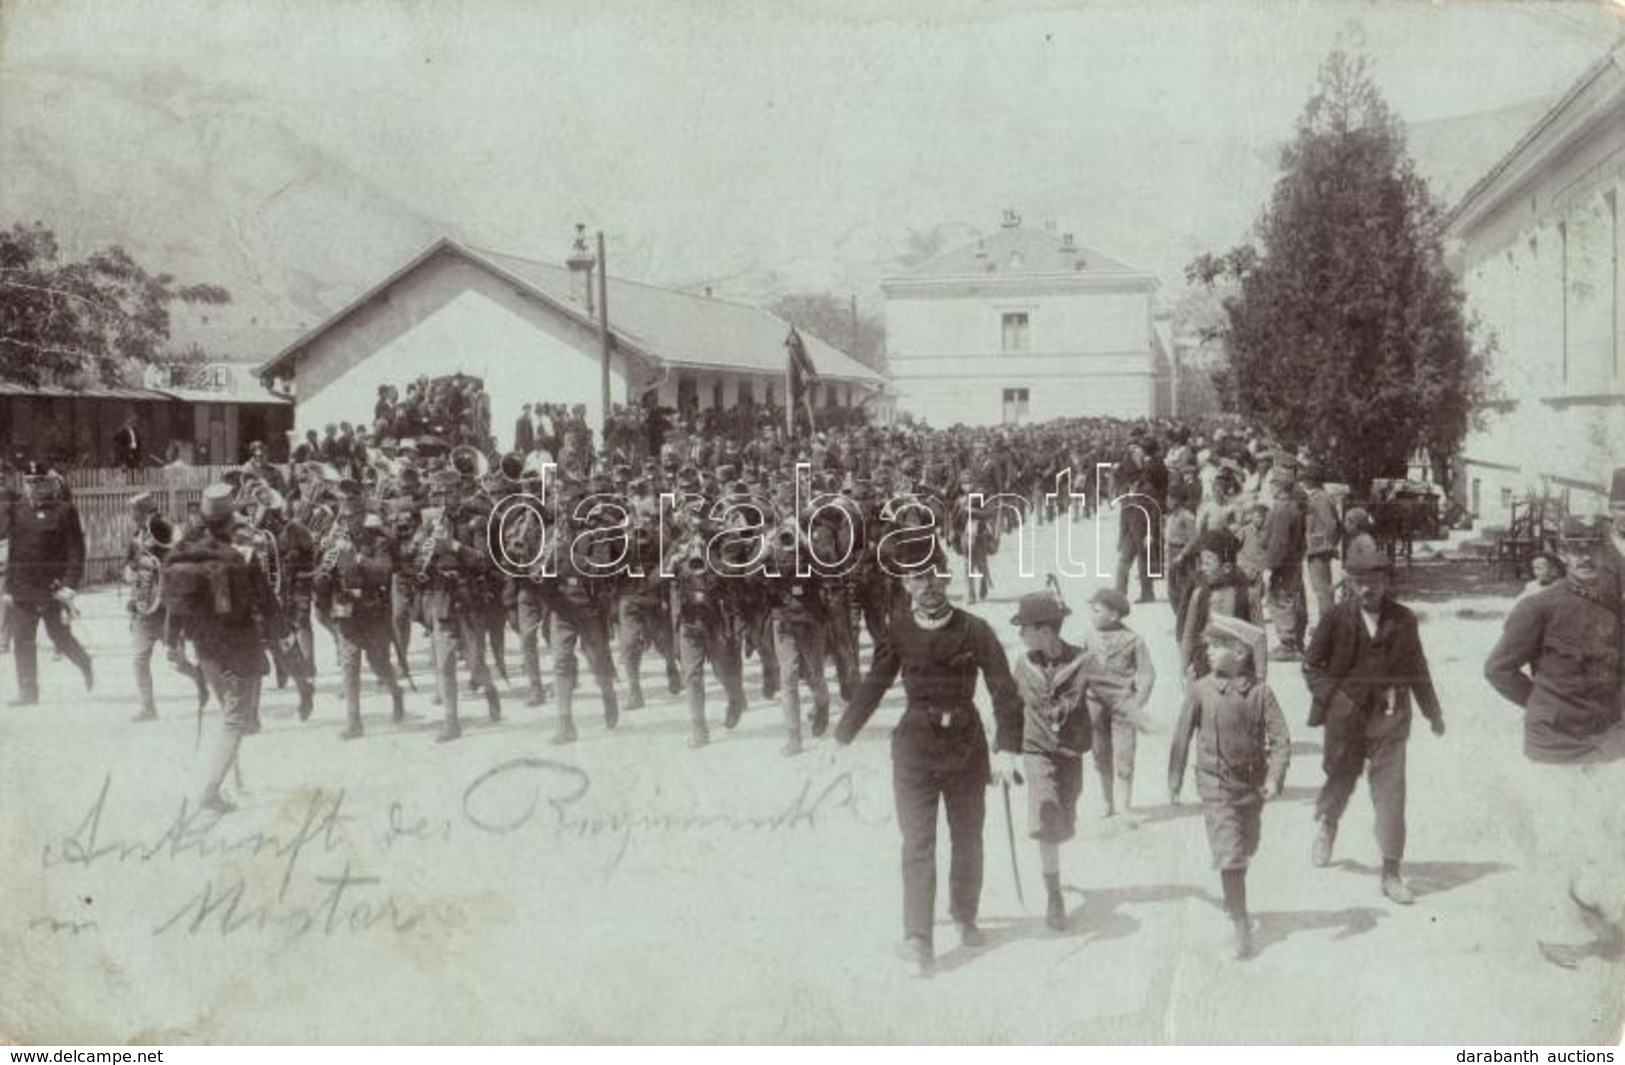 * T2/T3 Osztrák-magyar Hadsereg Békés Bevonulása Mostarba / K.u.k. Military, Peaceful Entry Of The Troops To Mostar. Pho - Ohne Zuordnung